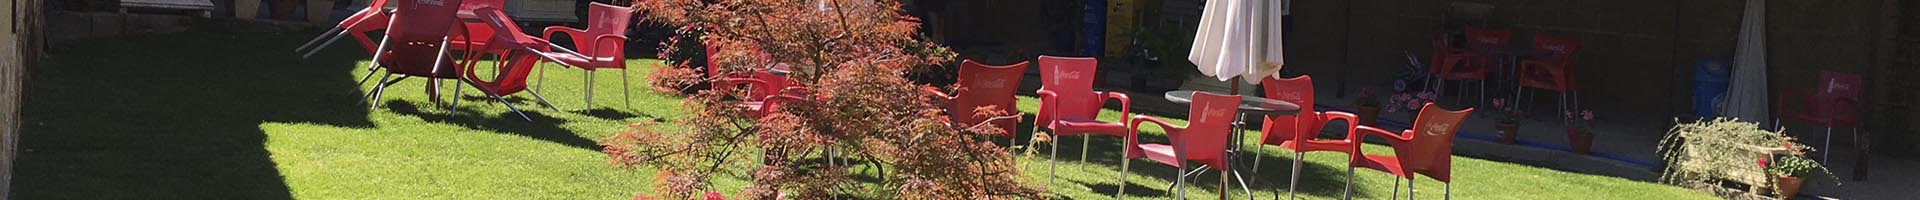 jardin con sillas